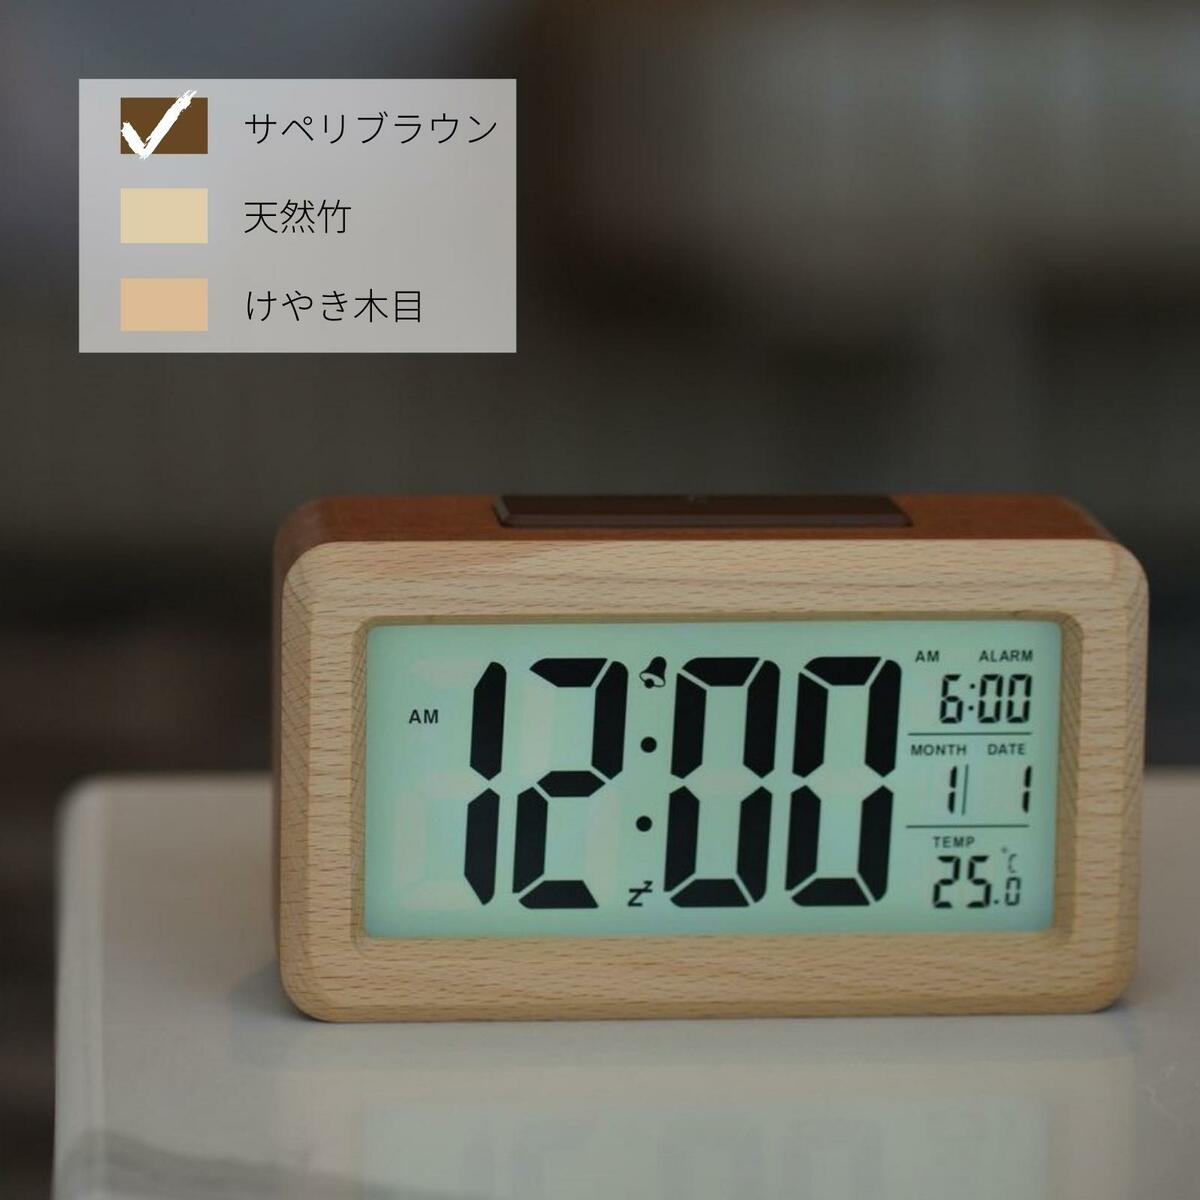 おしゃれな置き時計 天然木 置き時計 卓上 デジタル時計 光センサー付き 全周に天然木を使用した高級感溢れる置き時計です。時刻、アラーム時刻、月日、温度が常時表示。おしゃれなインテリアにマッチするアイテムです。DEMI LOUS.